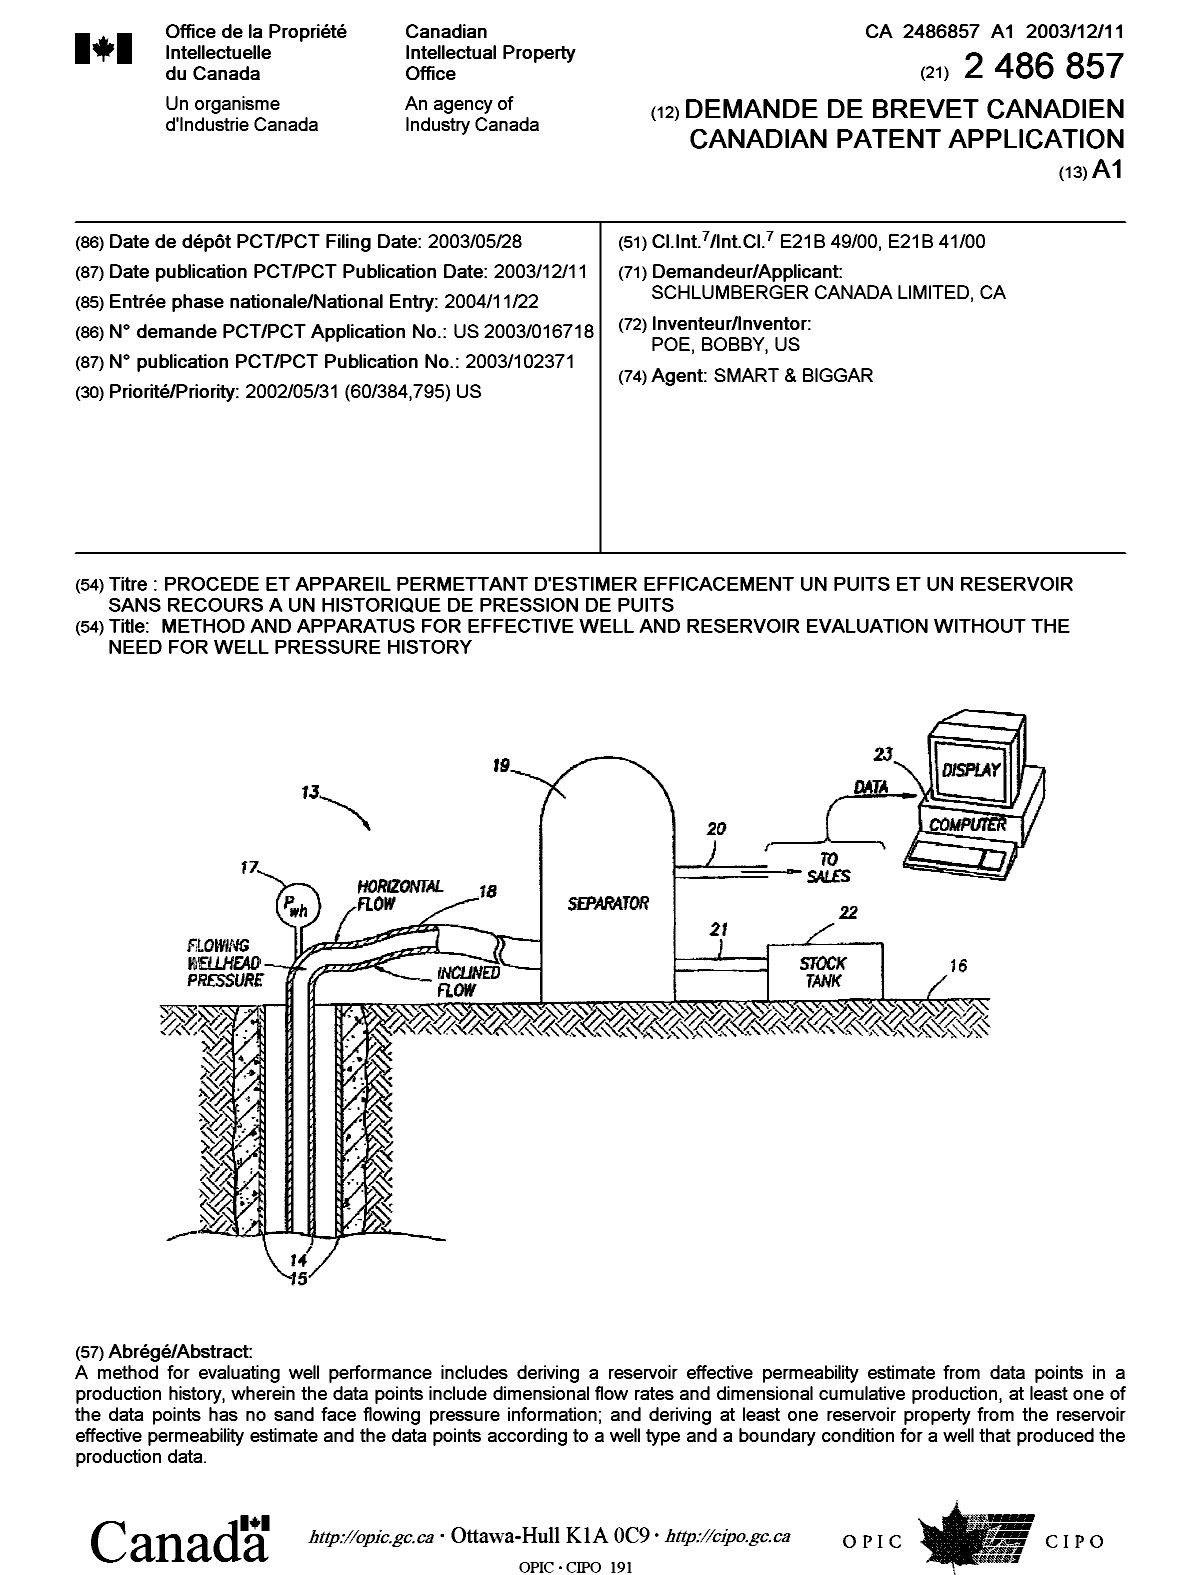 Document de brevet canadien 2486857. Page couverture 20050202. Image 1 de 1